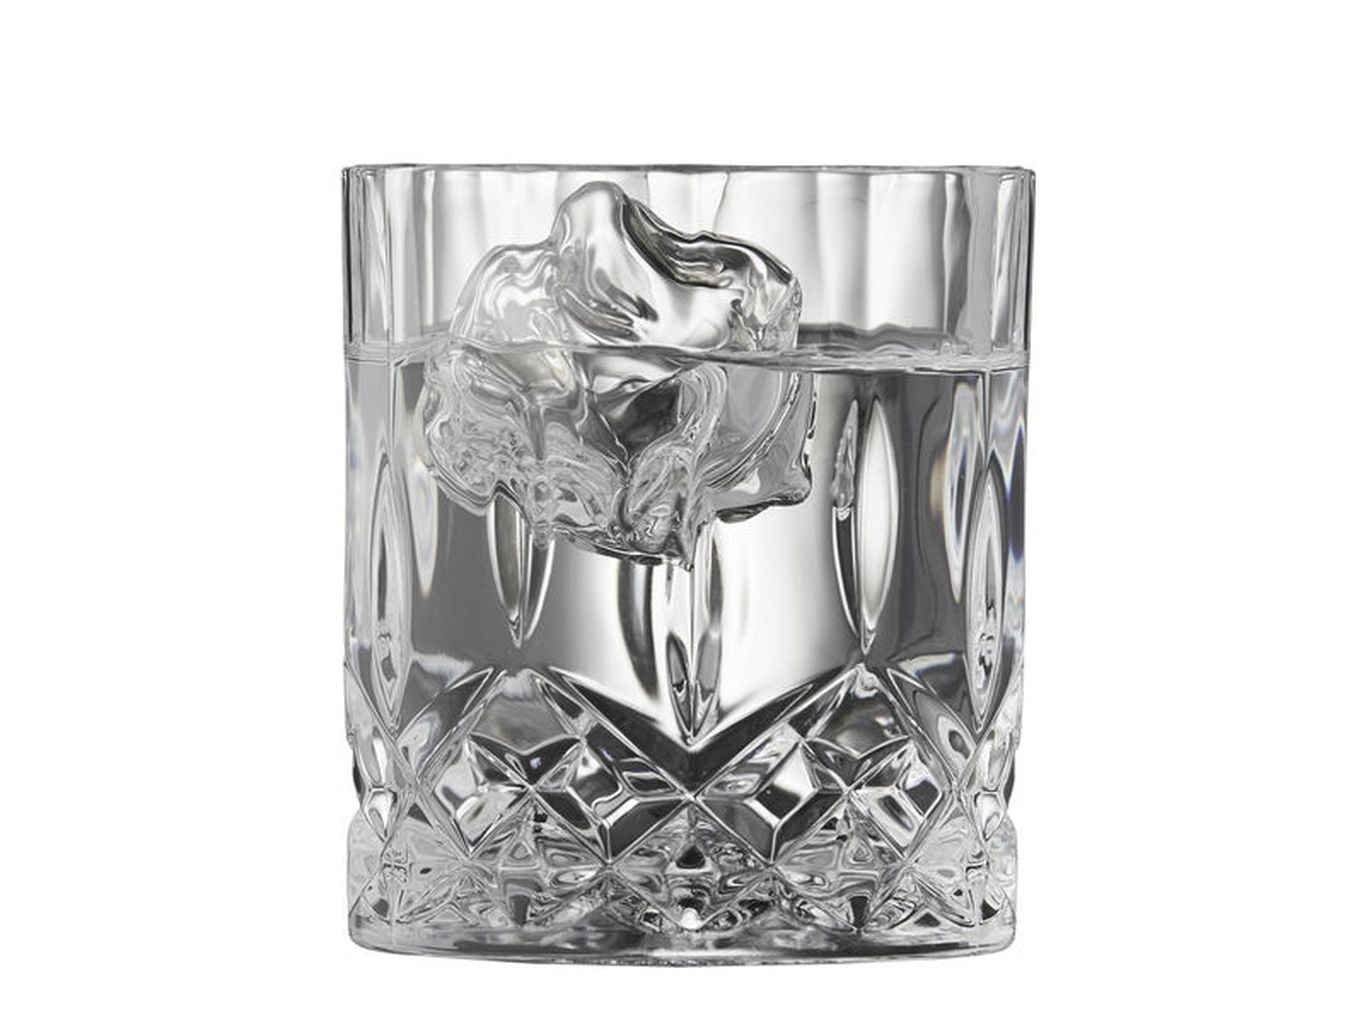 Lyngby Glas Krystal Glass Set 6 Lounge Glasses 31 Cl + 1 Carafe 1 L